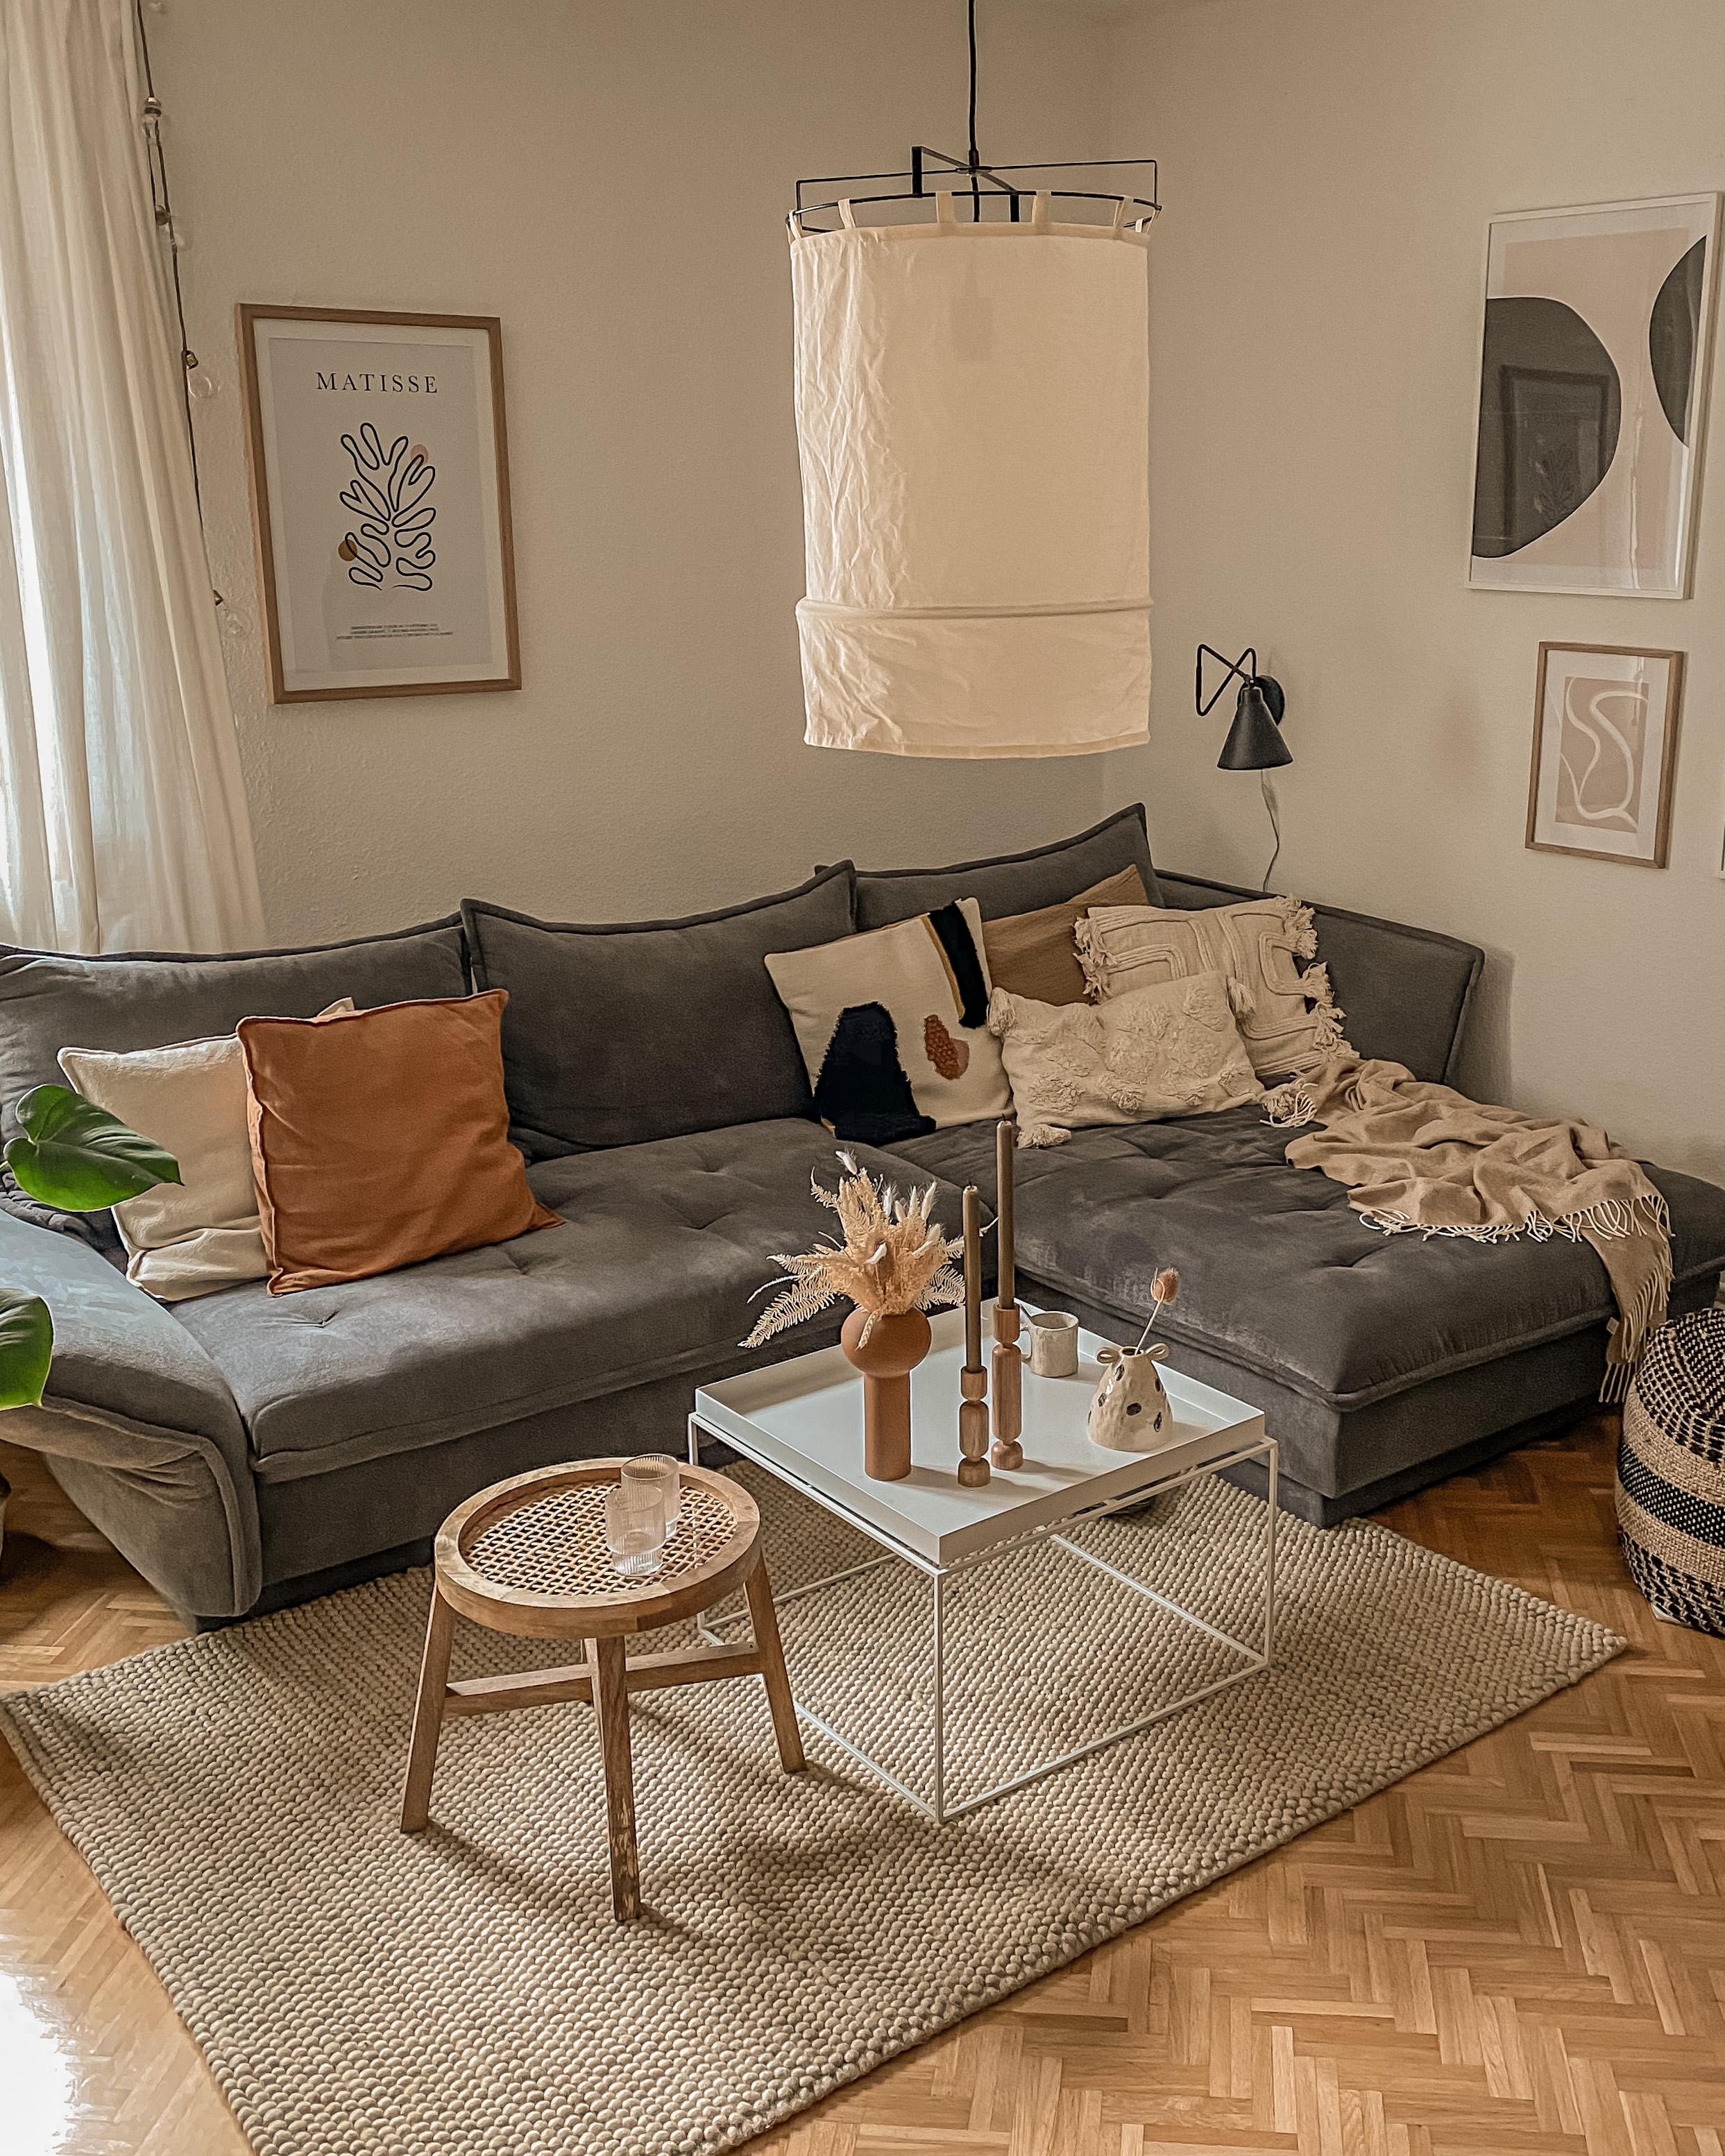 Hier ist ein neuer Teppich eingezogen! #teppich #couch #wohnzimmer #livingroom #couchtisch #sofa #altbauliebe #kissen